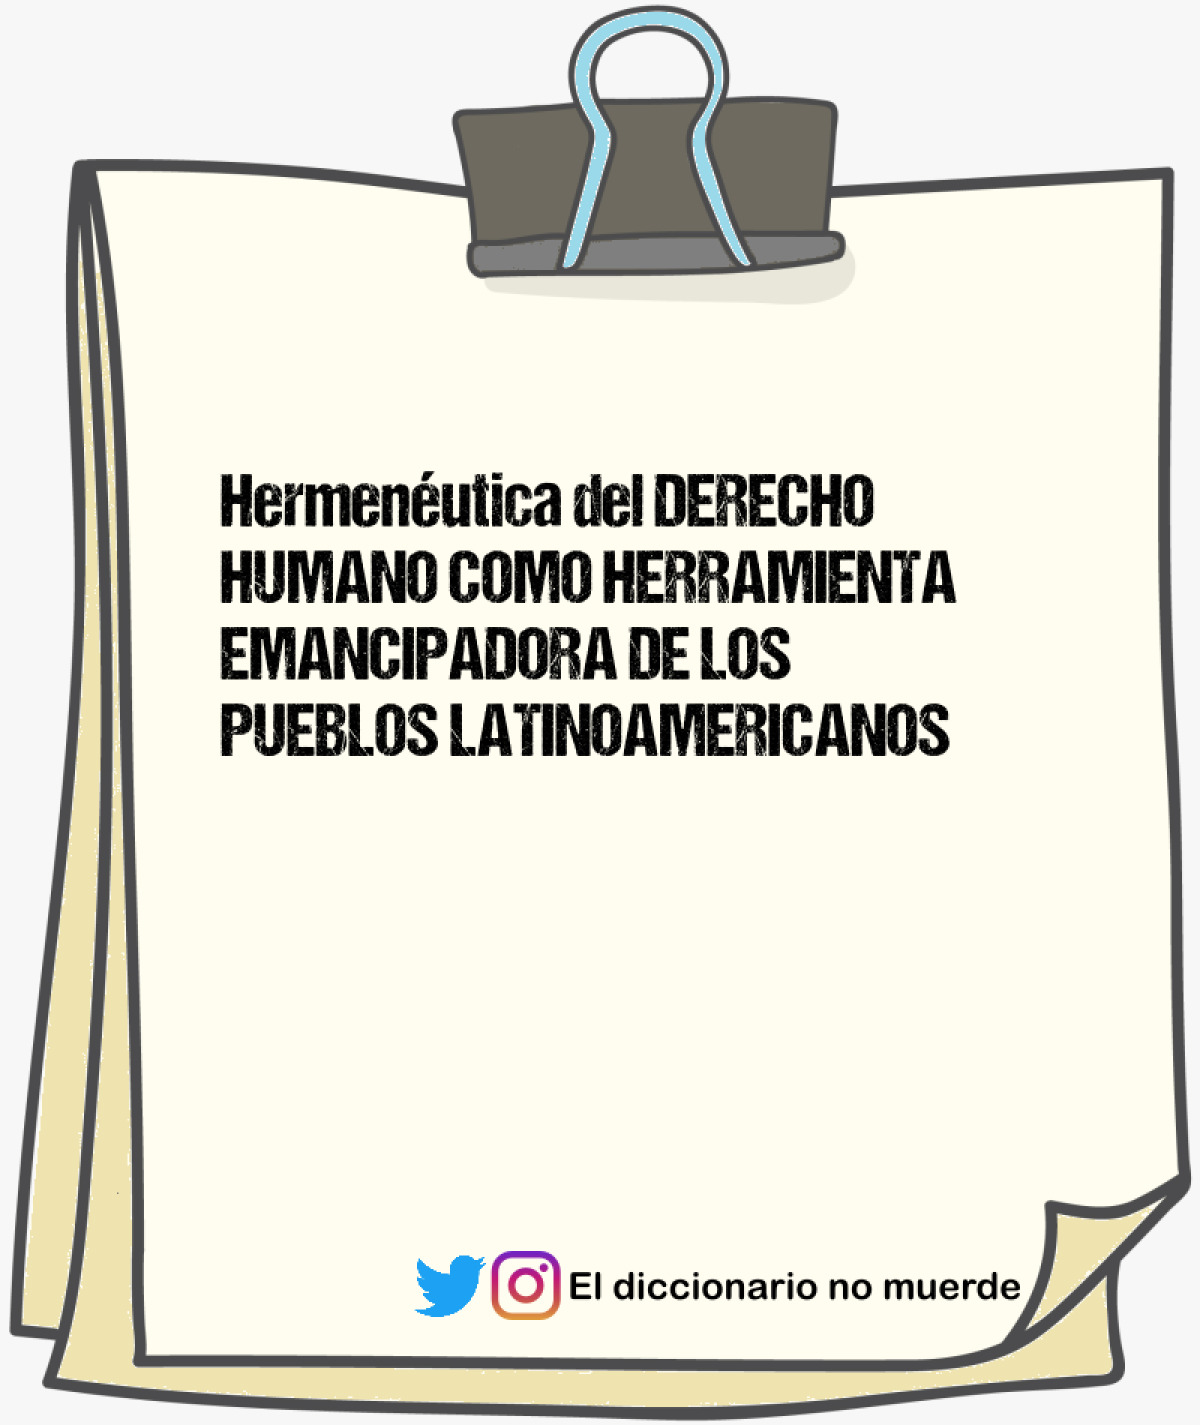 Hermenéutica del DERECHO HUMANO COMO HERRAMIENTA EMANCIPADORA DE LOS PUEBLOS LATINOAMERICANOS